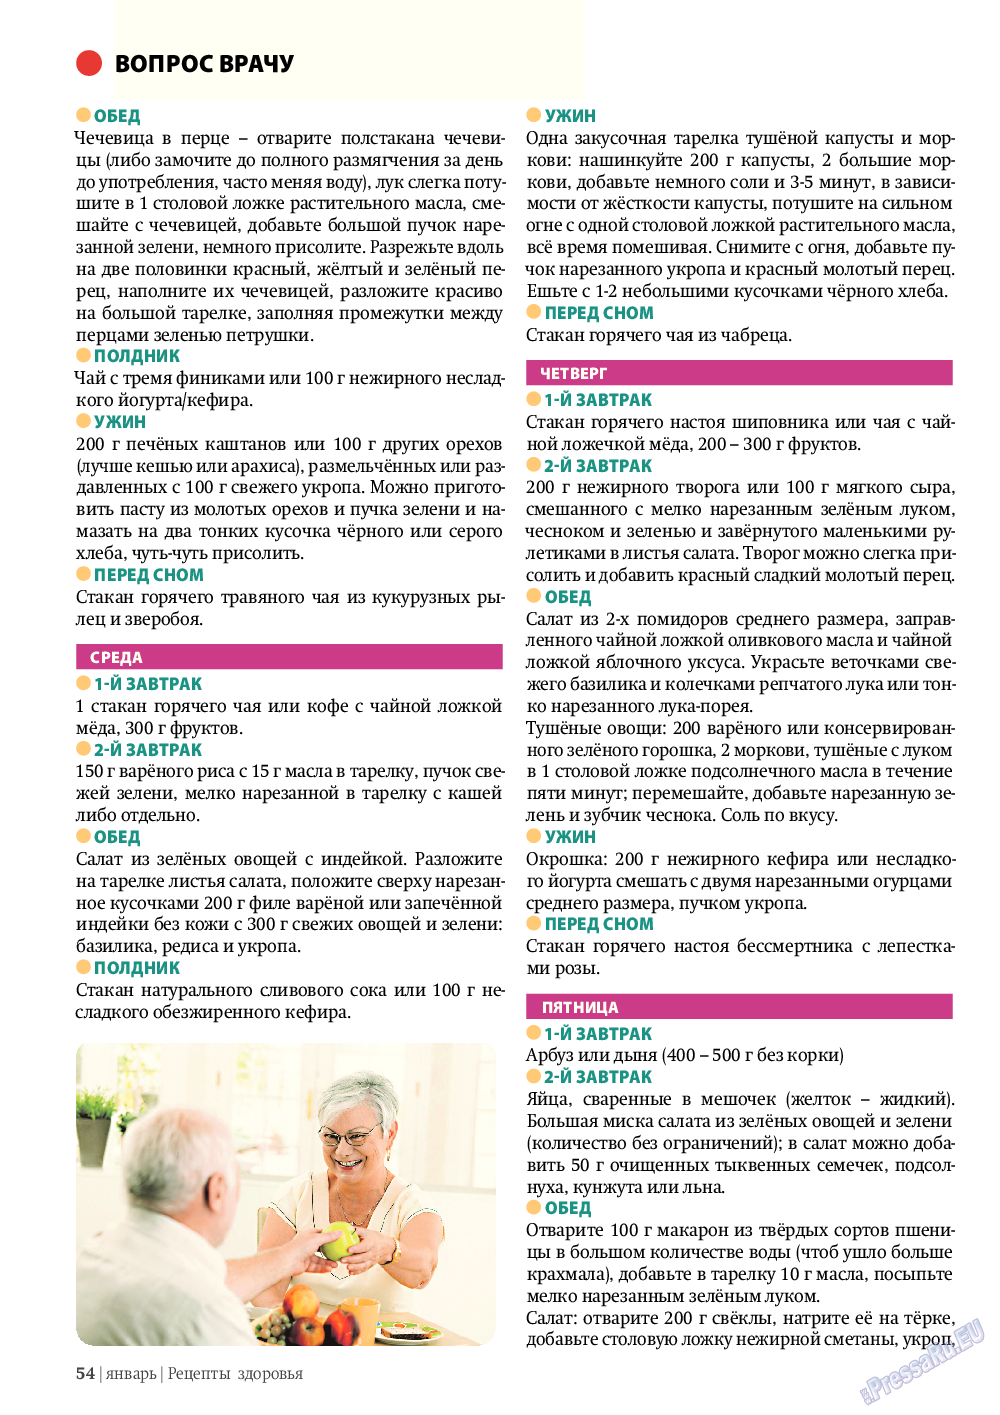 Рецепты здоровья, журнал. 2012 №1 стр.54